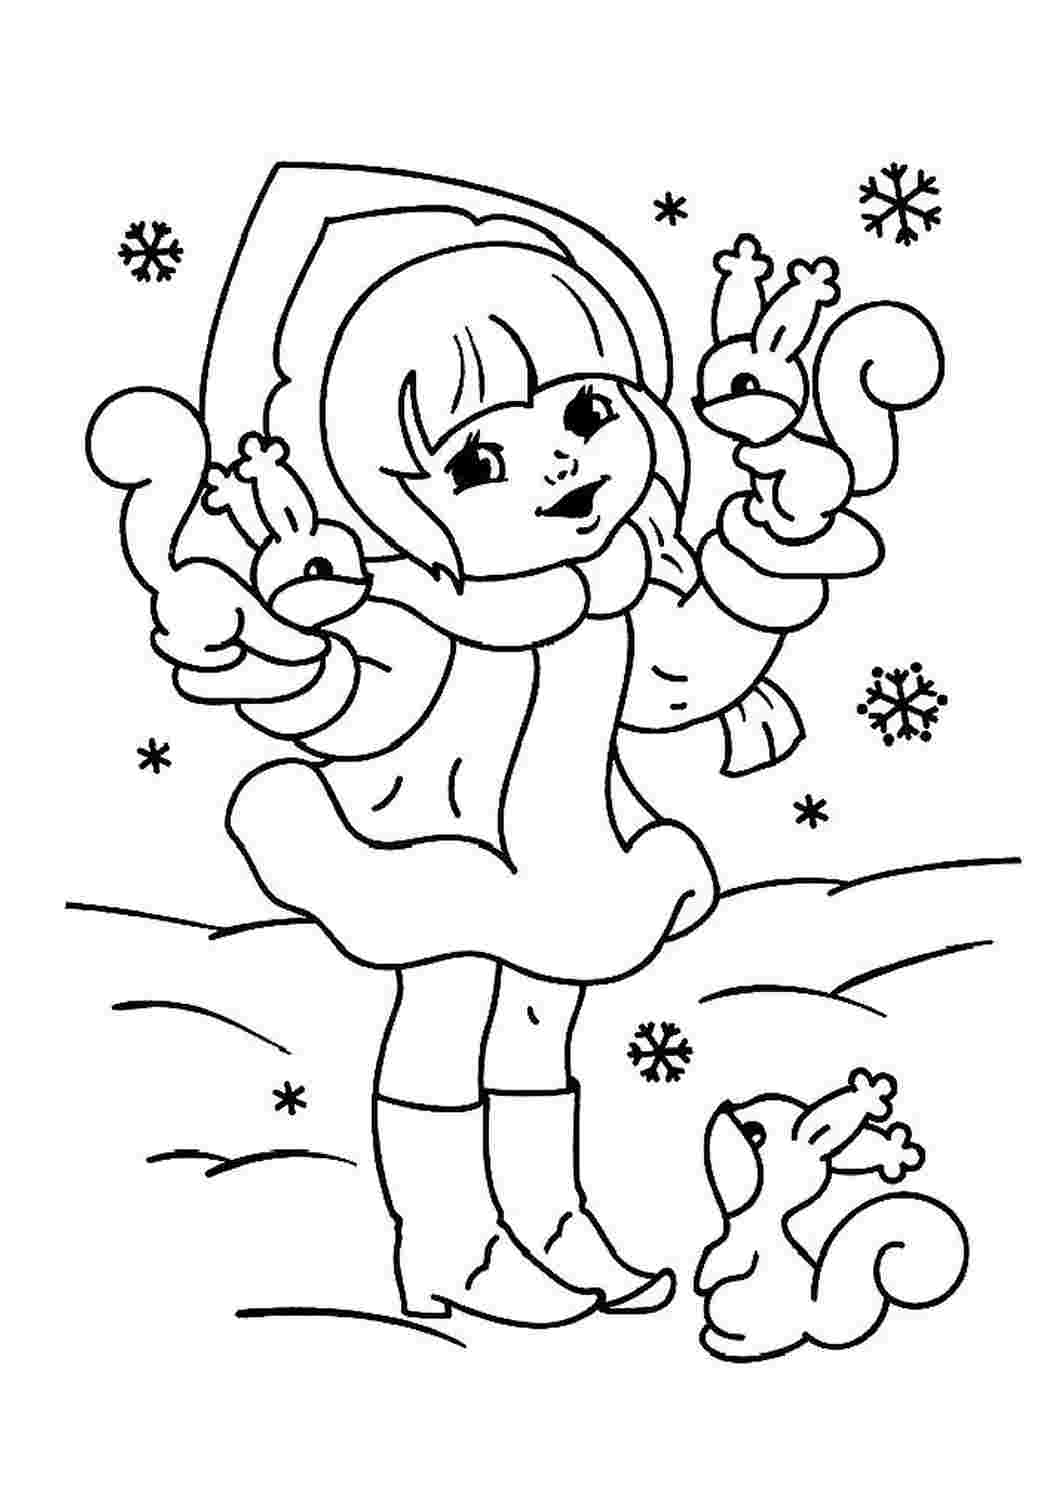 Снегурушка раскраска для детей